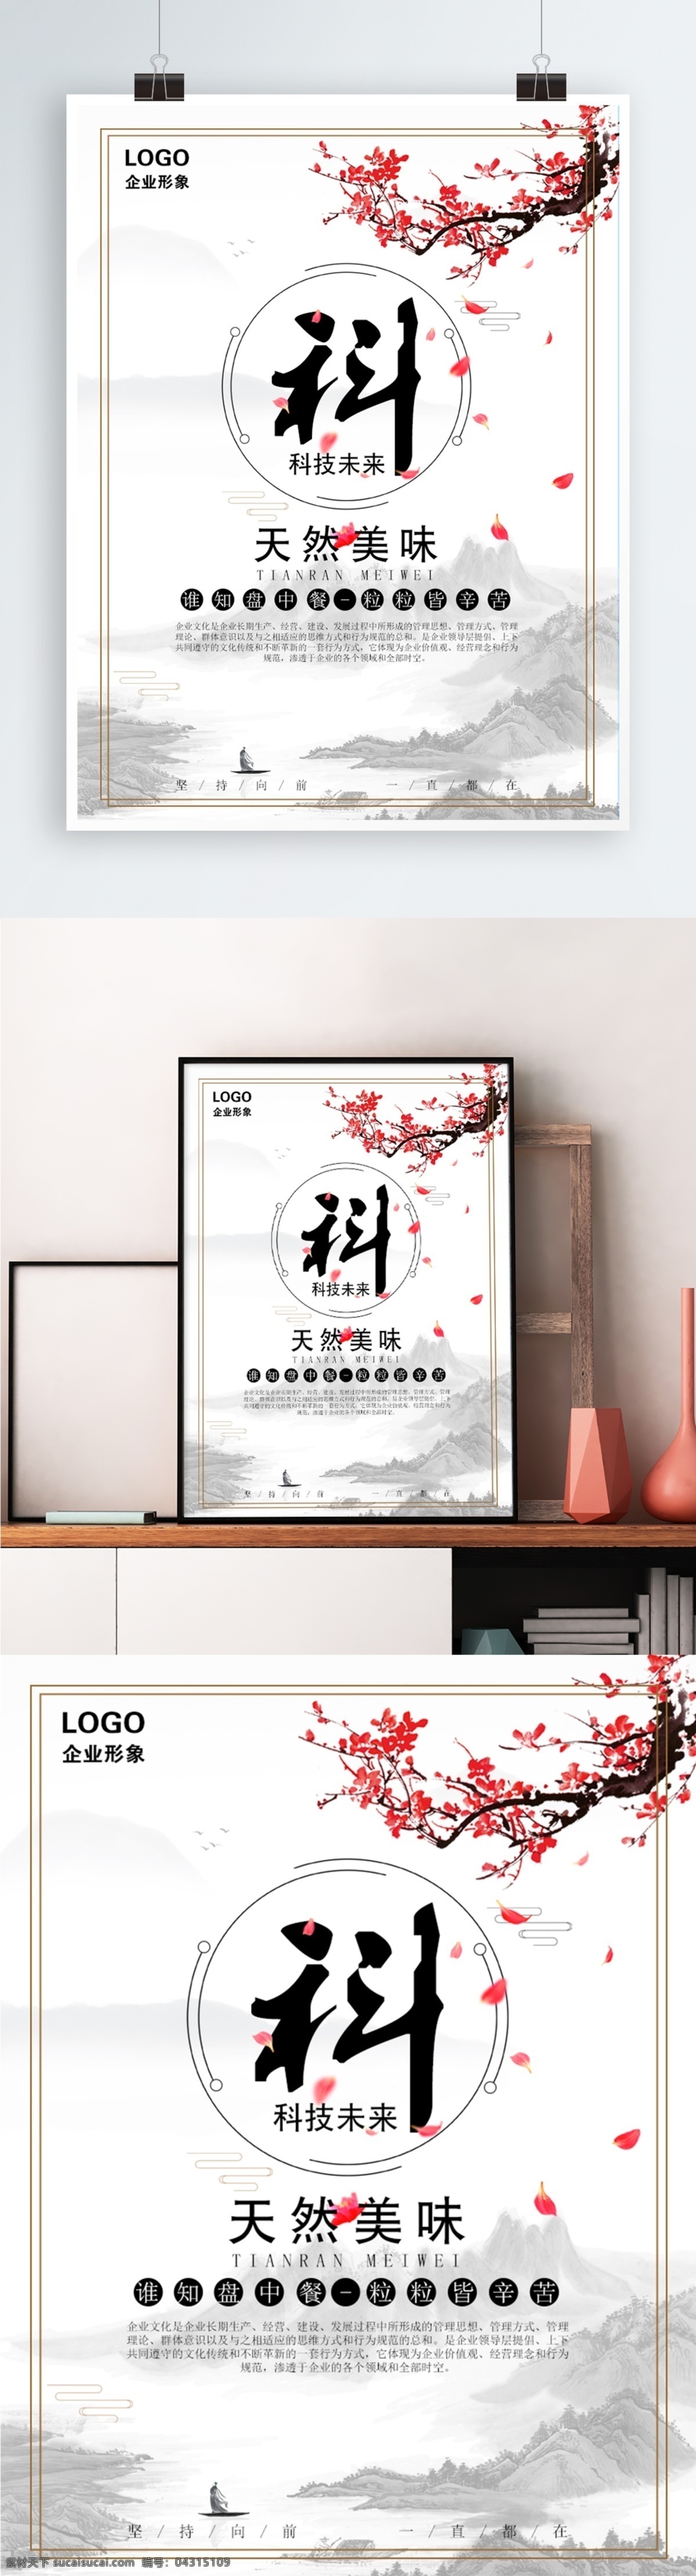 天然 美味 中国 风 企业 宣传海报 logo 公司文化 梅花 企业文化 水墨风 中国风